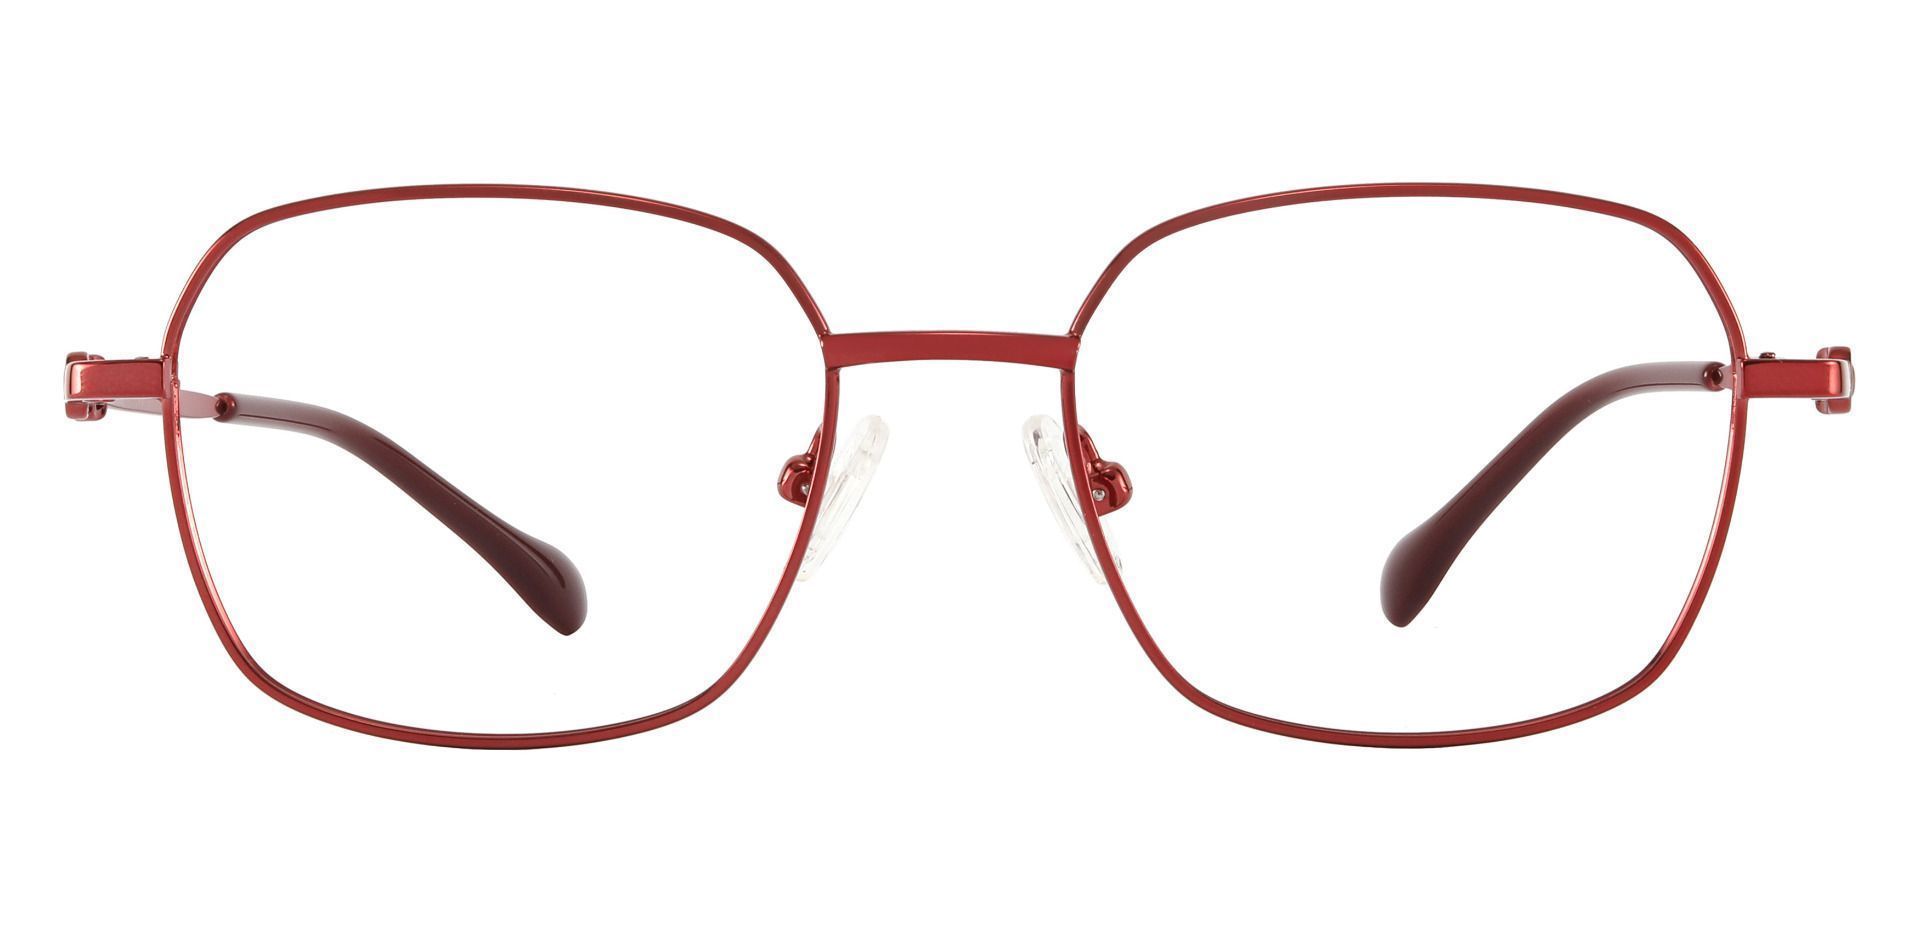 Averill Geometric Eyeglasses Frame - Red